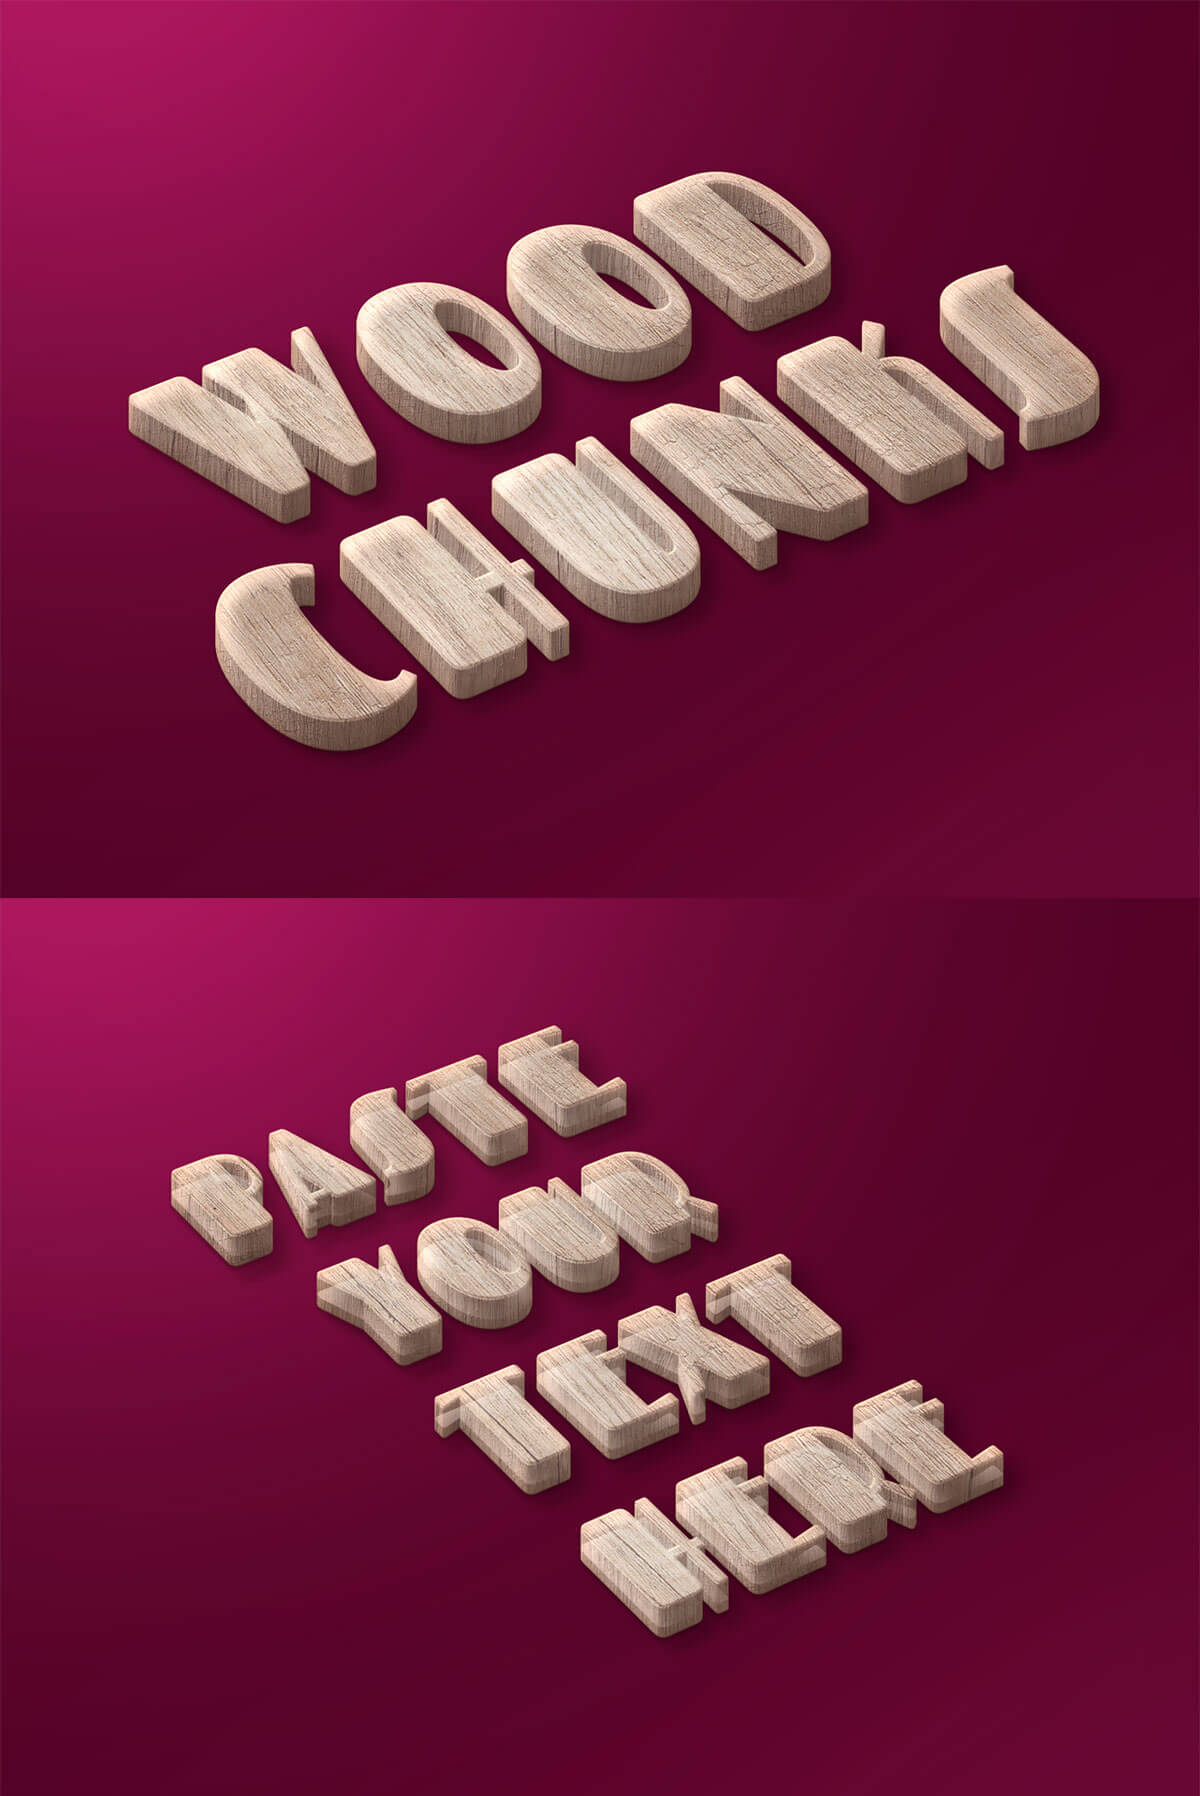 木质大块文字效果 Wood Chunks Text Effect插图1